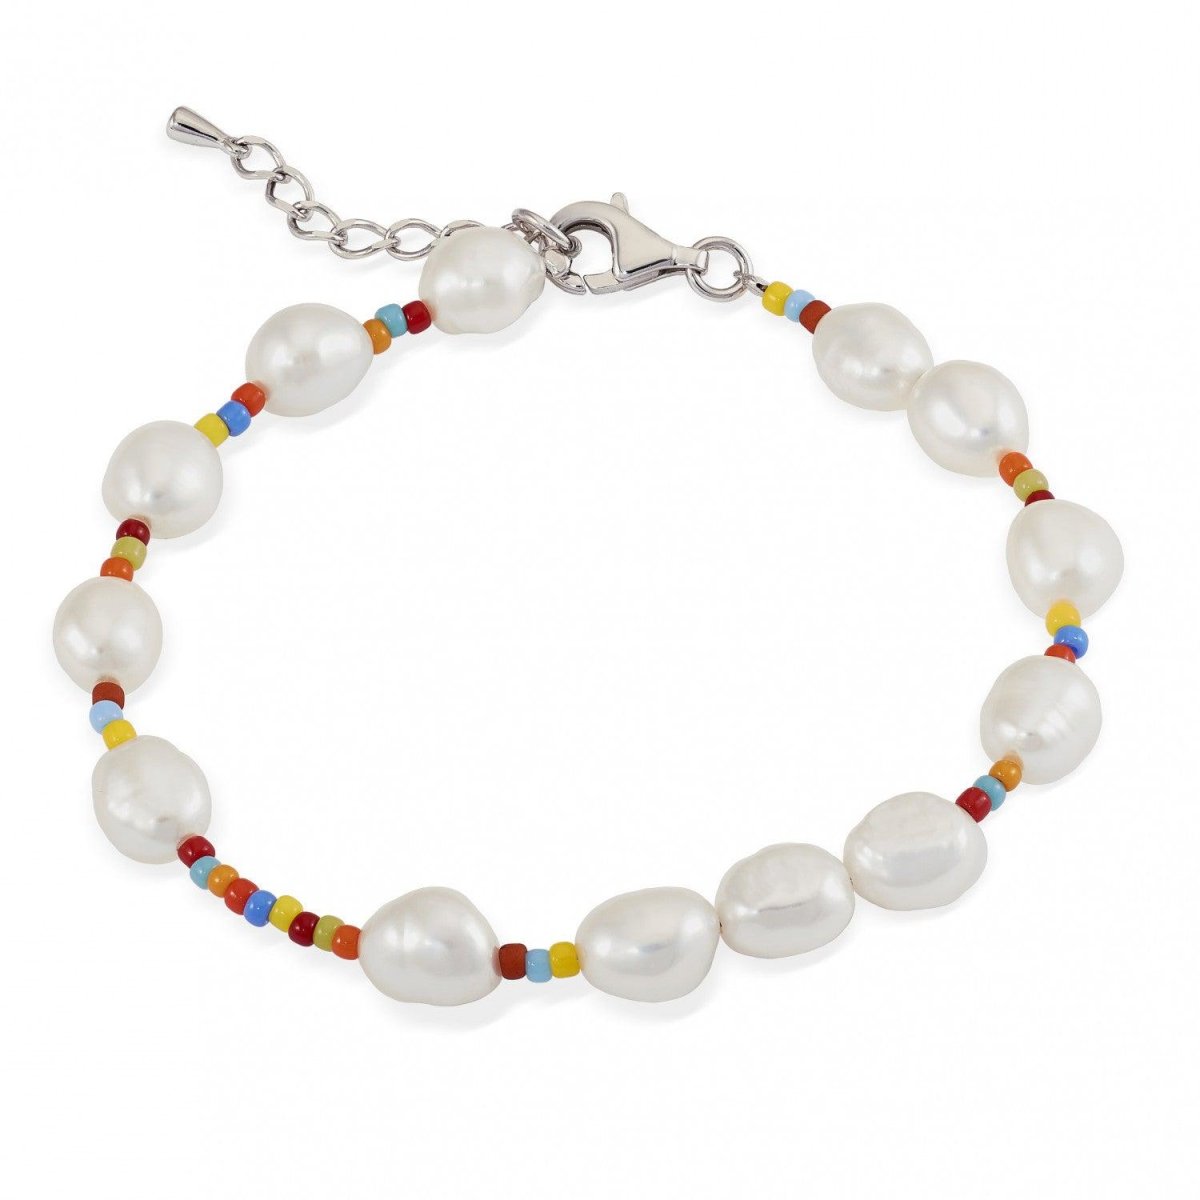 Pulsera · Pulseras de plata diseño multicolor con perla